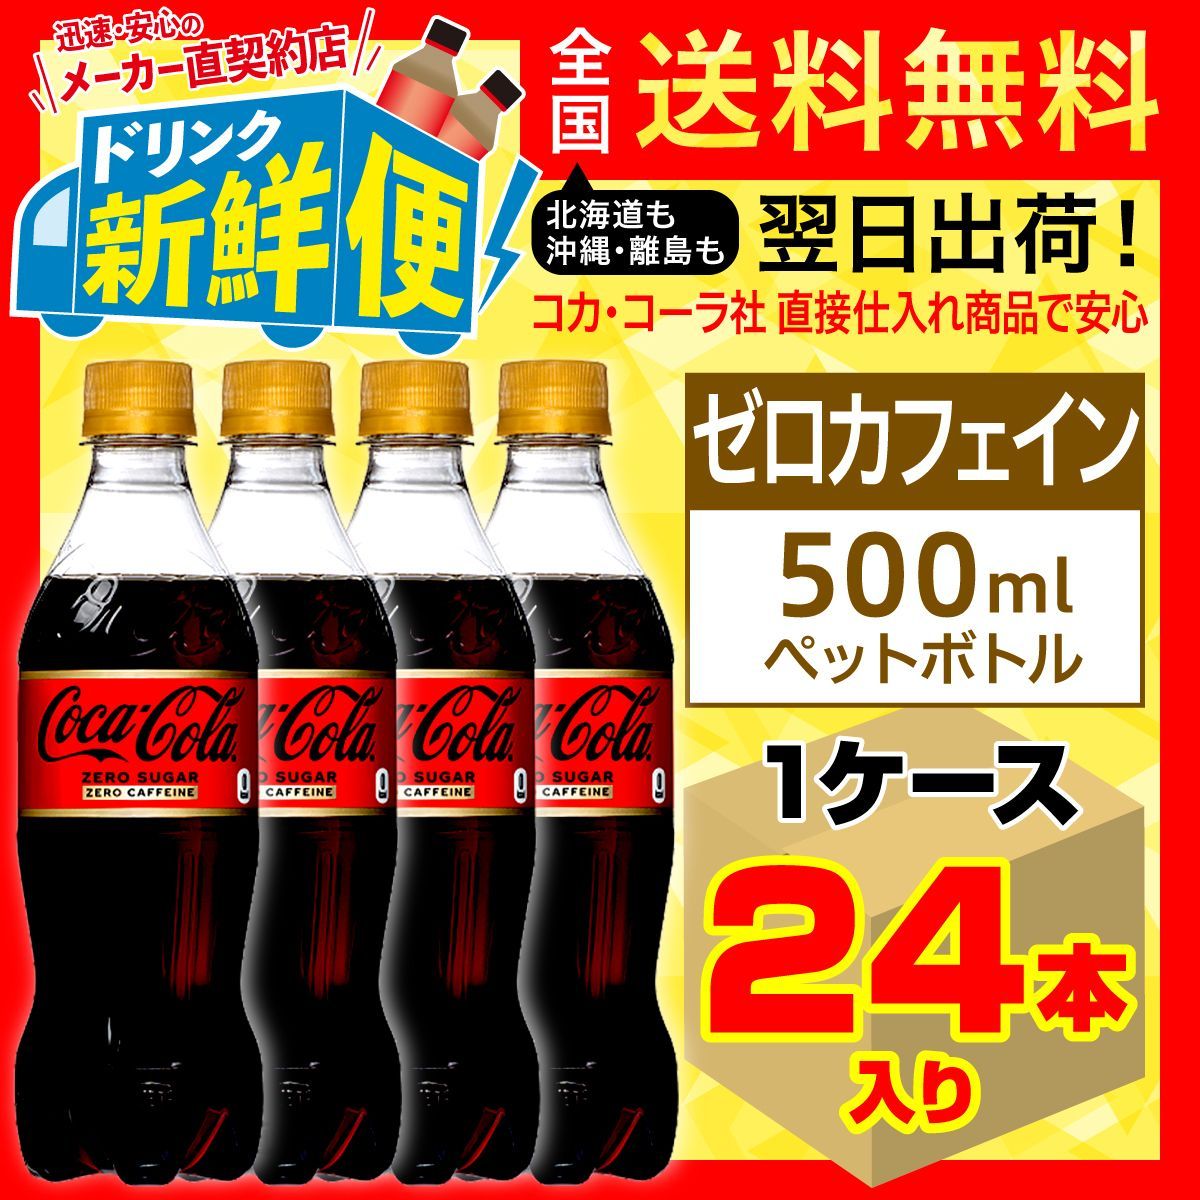 コカ・コーラ ゼロカフェイン 500ml 24本入1ケース/122269C1-0